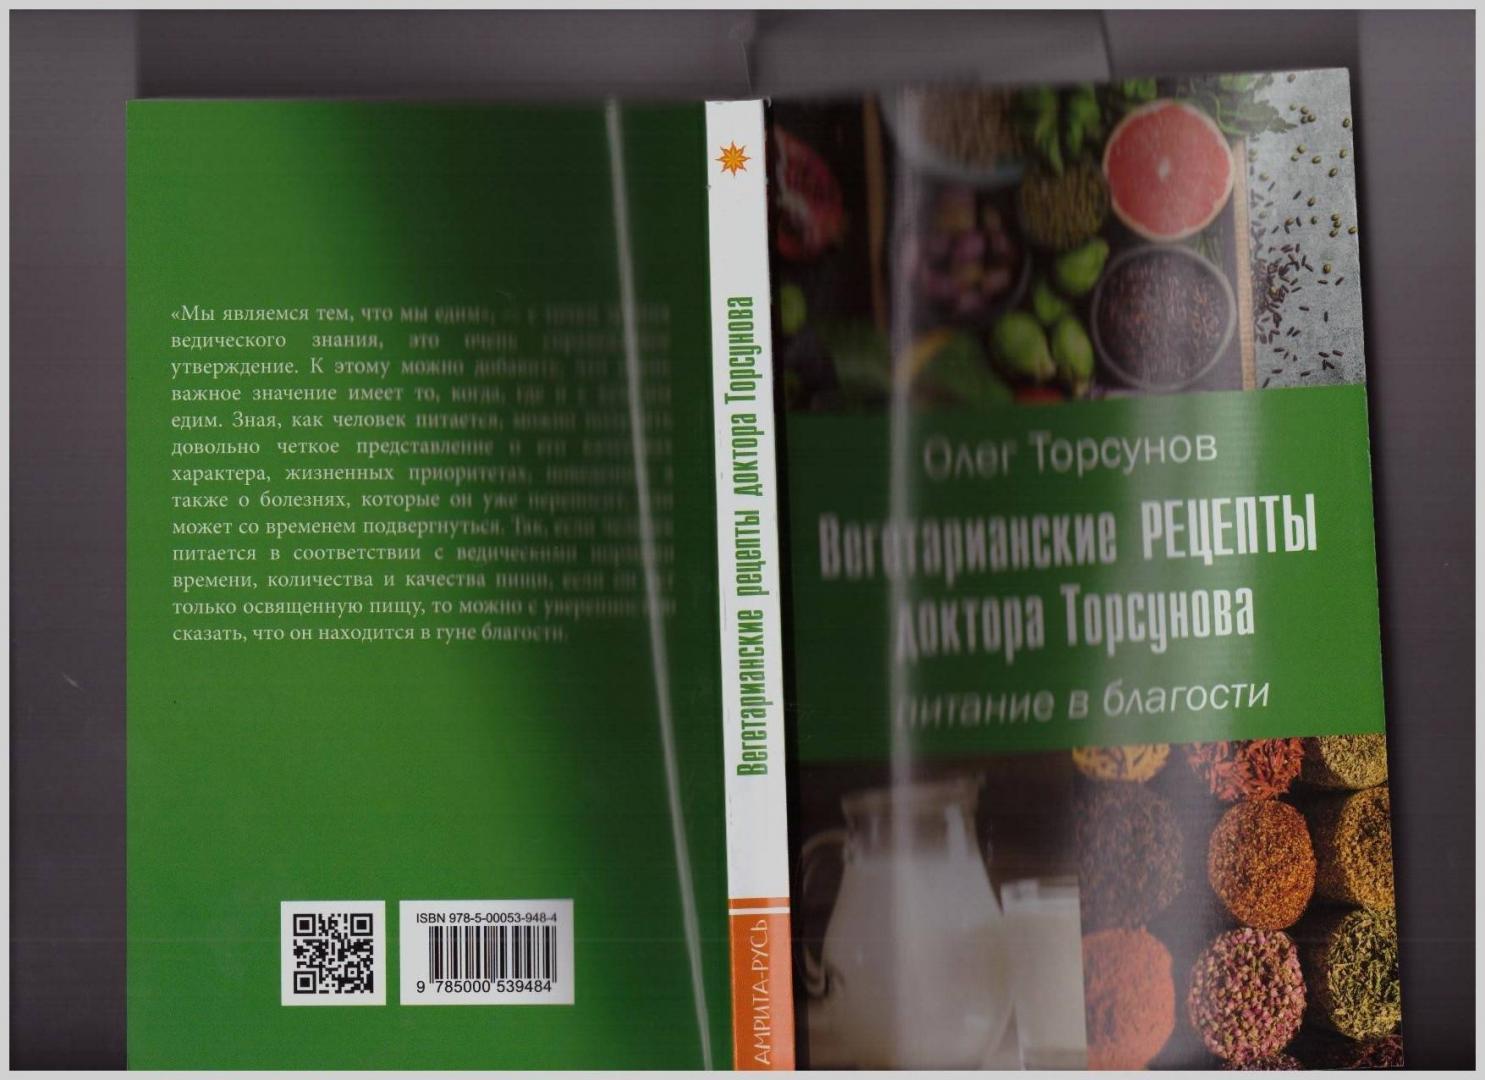 Иллюстрация 10 из 23 для Вегетарианские рецепты доктора Торсунова. Питание в Благости - Олег Торсунов | Лабиринт - книги. Источник: LanaEr